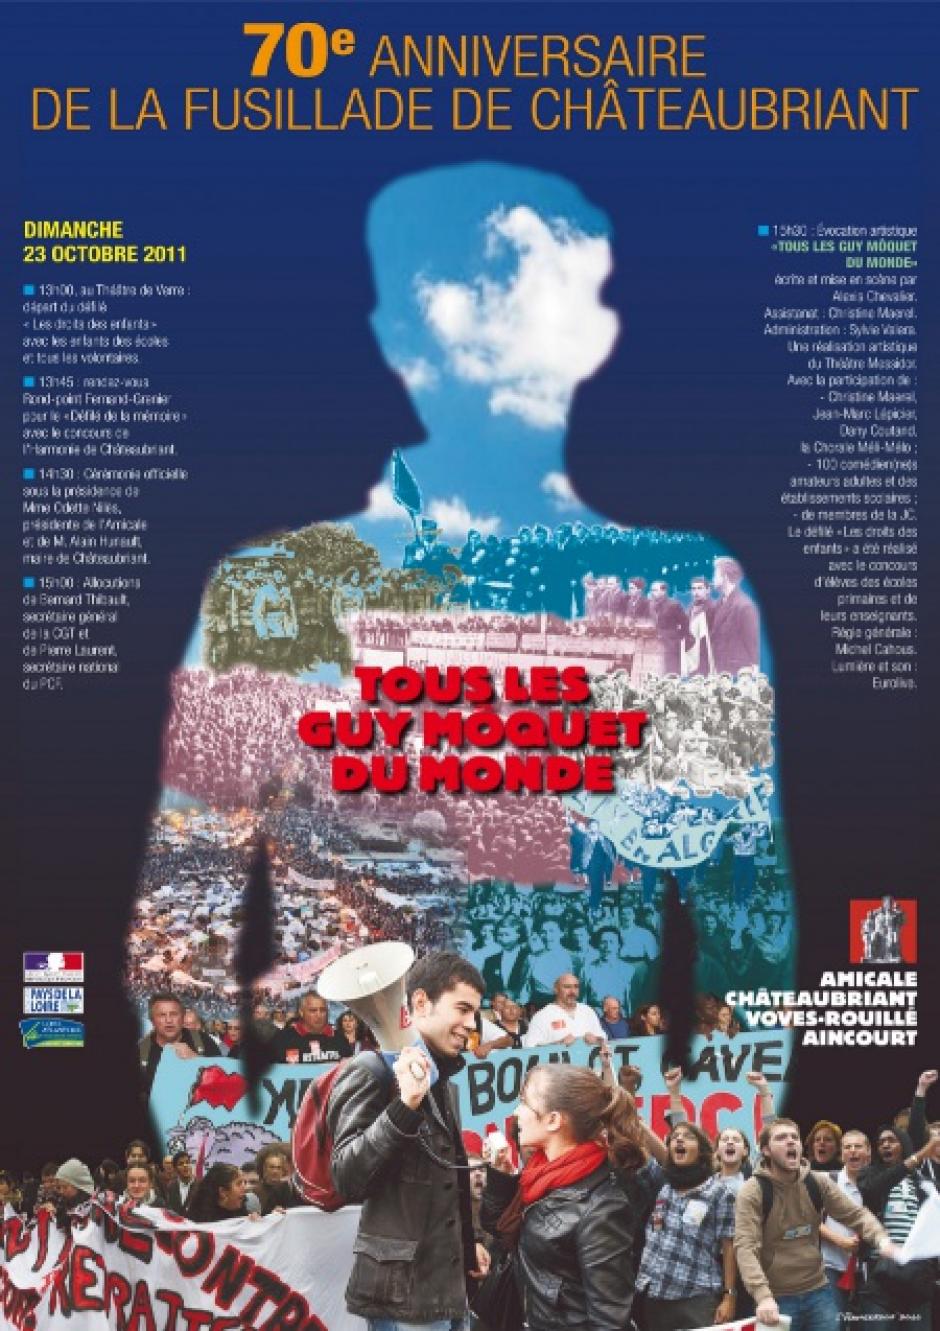 70e anniversaire de la fusillade des otages de Châteaubriant - 23 octobre 2011